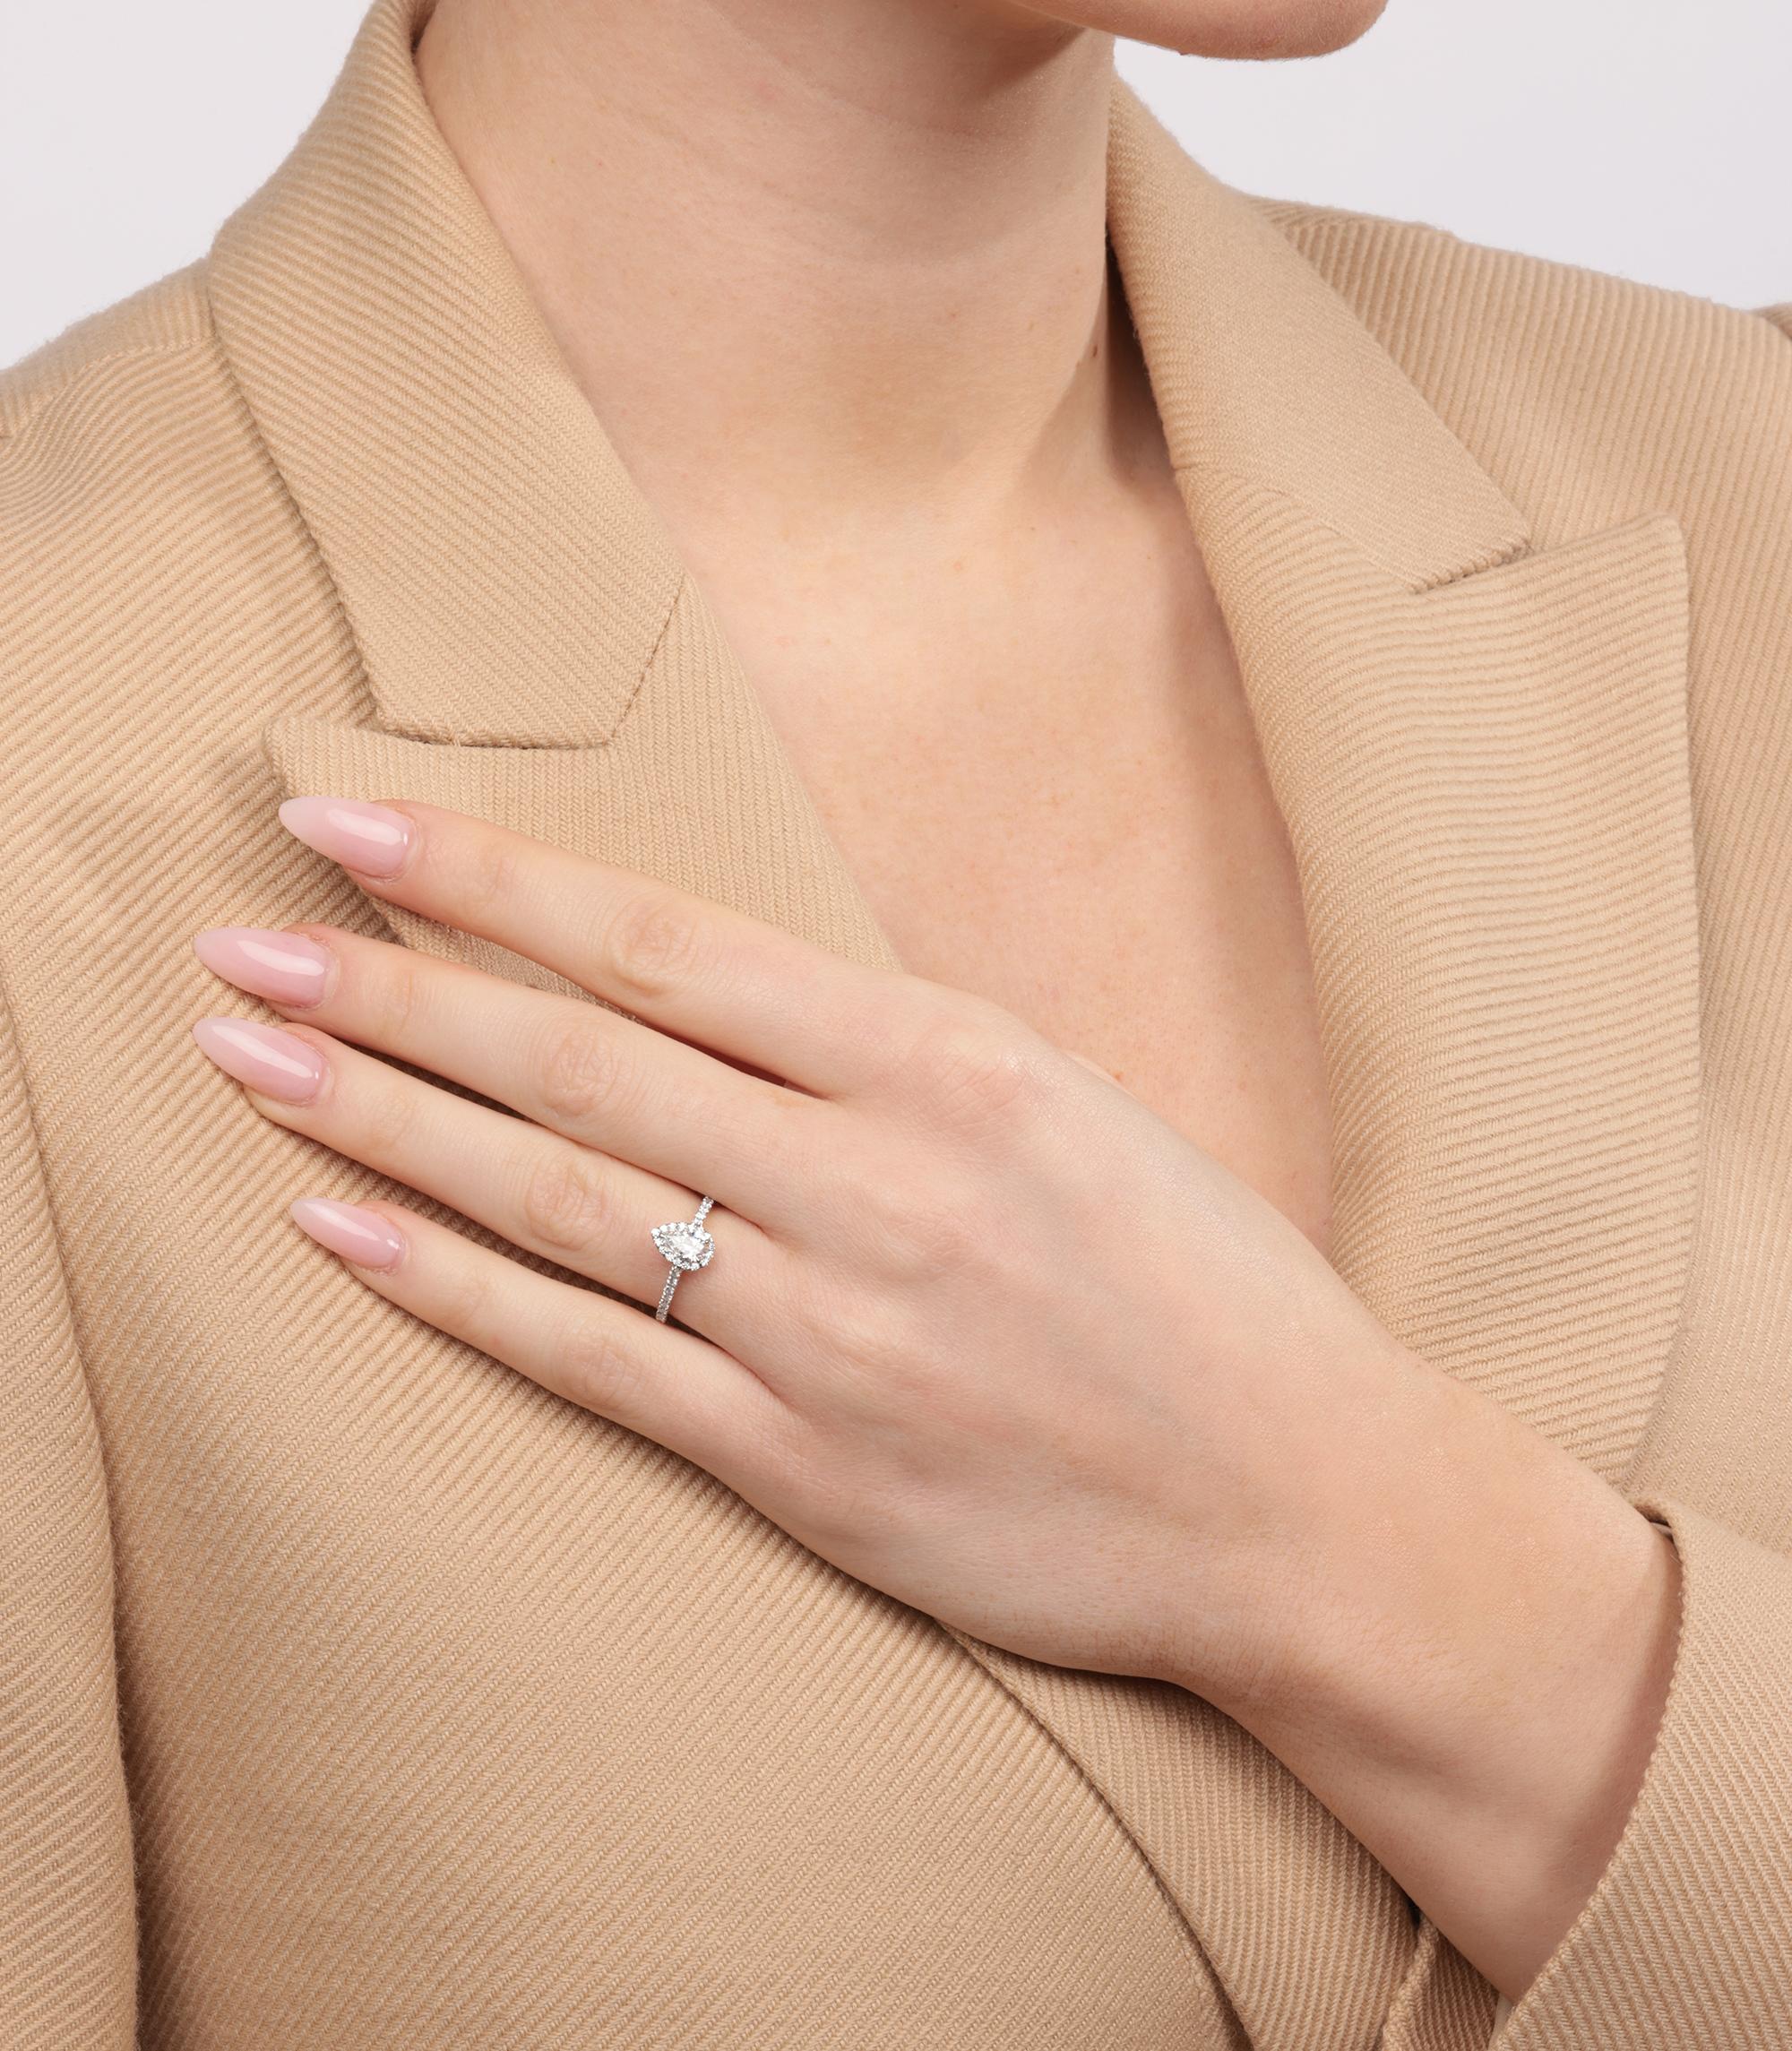 Tiffany & Co. 0,42ct Diamond Pear Cut Platinum Soleste Ring

Marque : Tiffany & Co.
Modèle - Bague Soleste en diamant de 0.42ct
Type de produit- Bague
Numéro de série - 66******
Age- Circa 2020
Accompagné de : Tiffany & Co. Boîte,